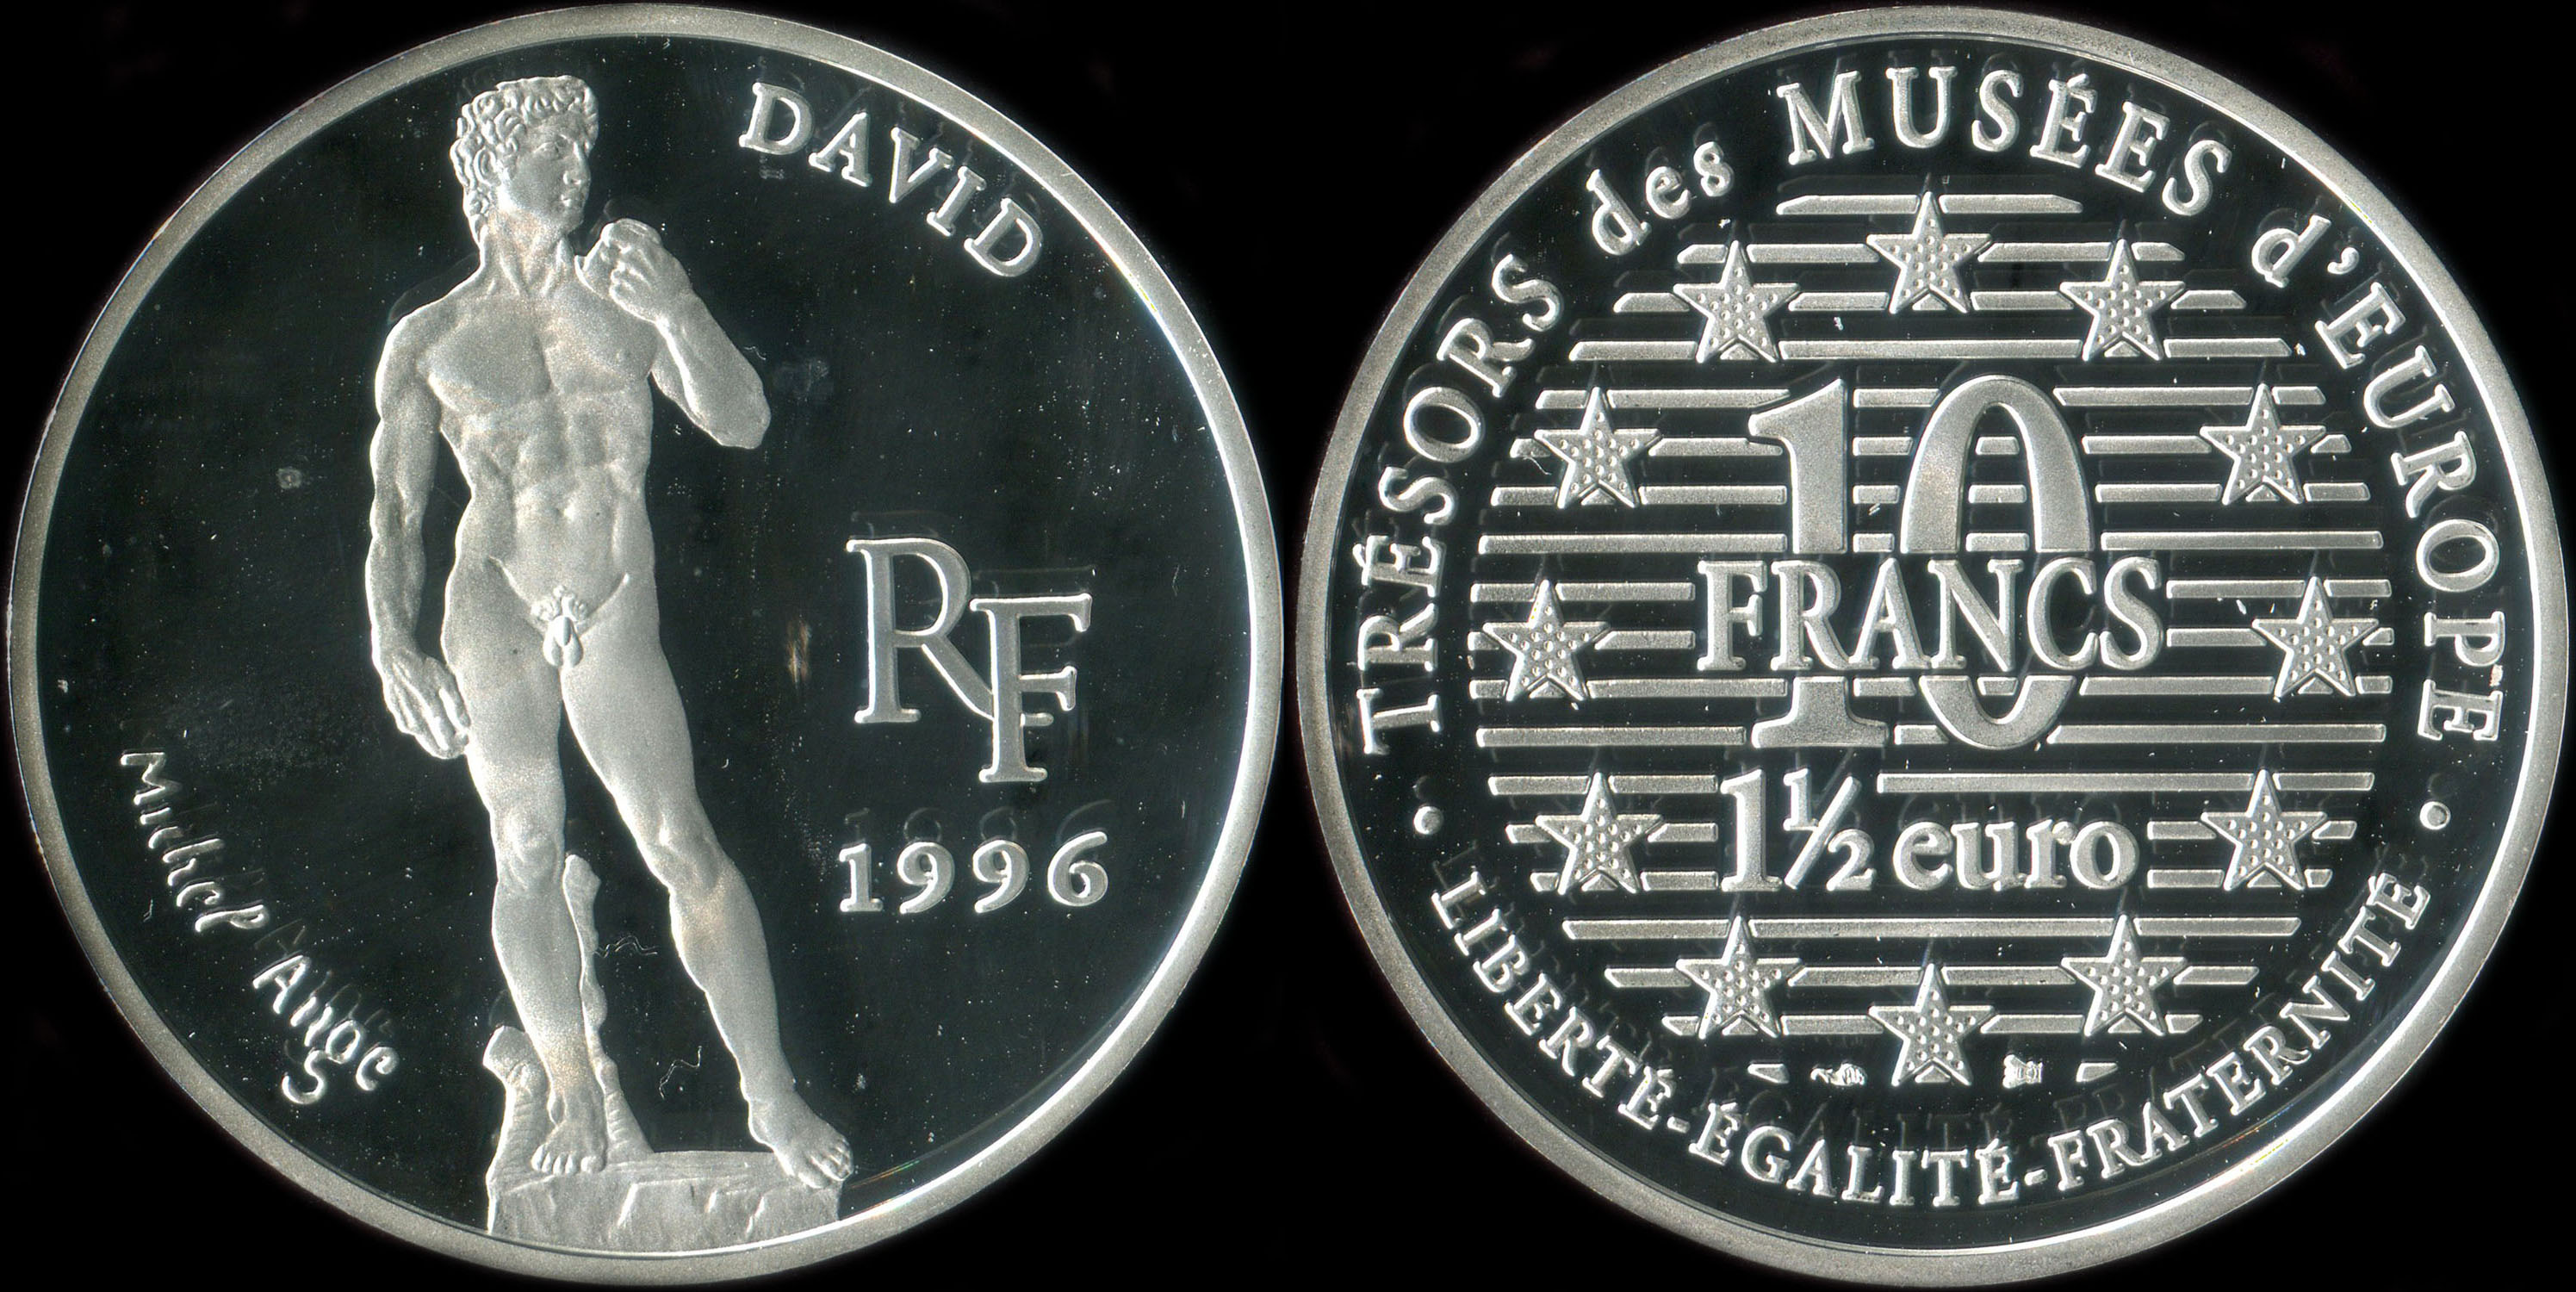 Pice de 10 francs - 1  euro 1996 - Trsors des Muses d'Europe - David par Michel-Ange